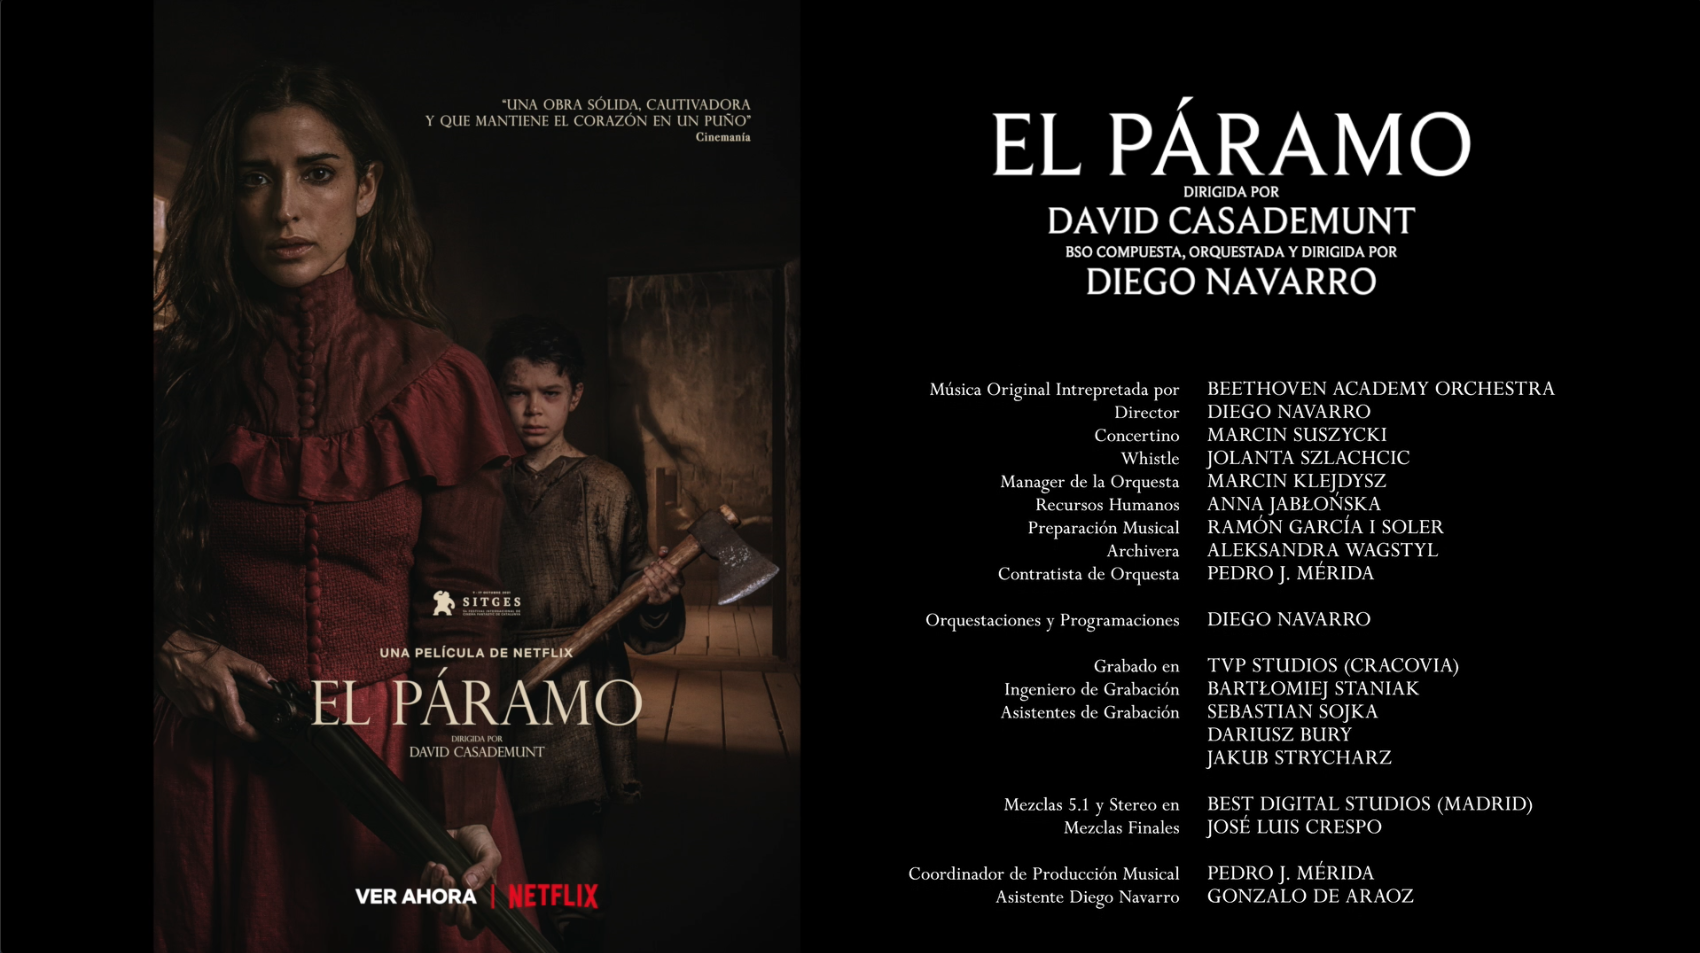 Tema principal de “El Páramo” – Tema de amor Lucía y Diego / “The Wasteland” main theme – Love theme Lucía & Diego – Behind the Scenes